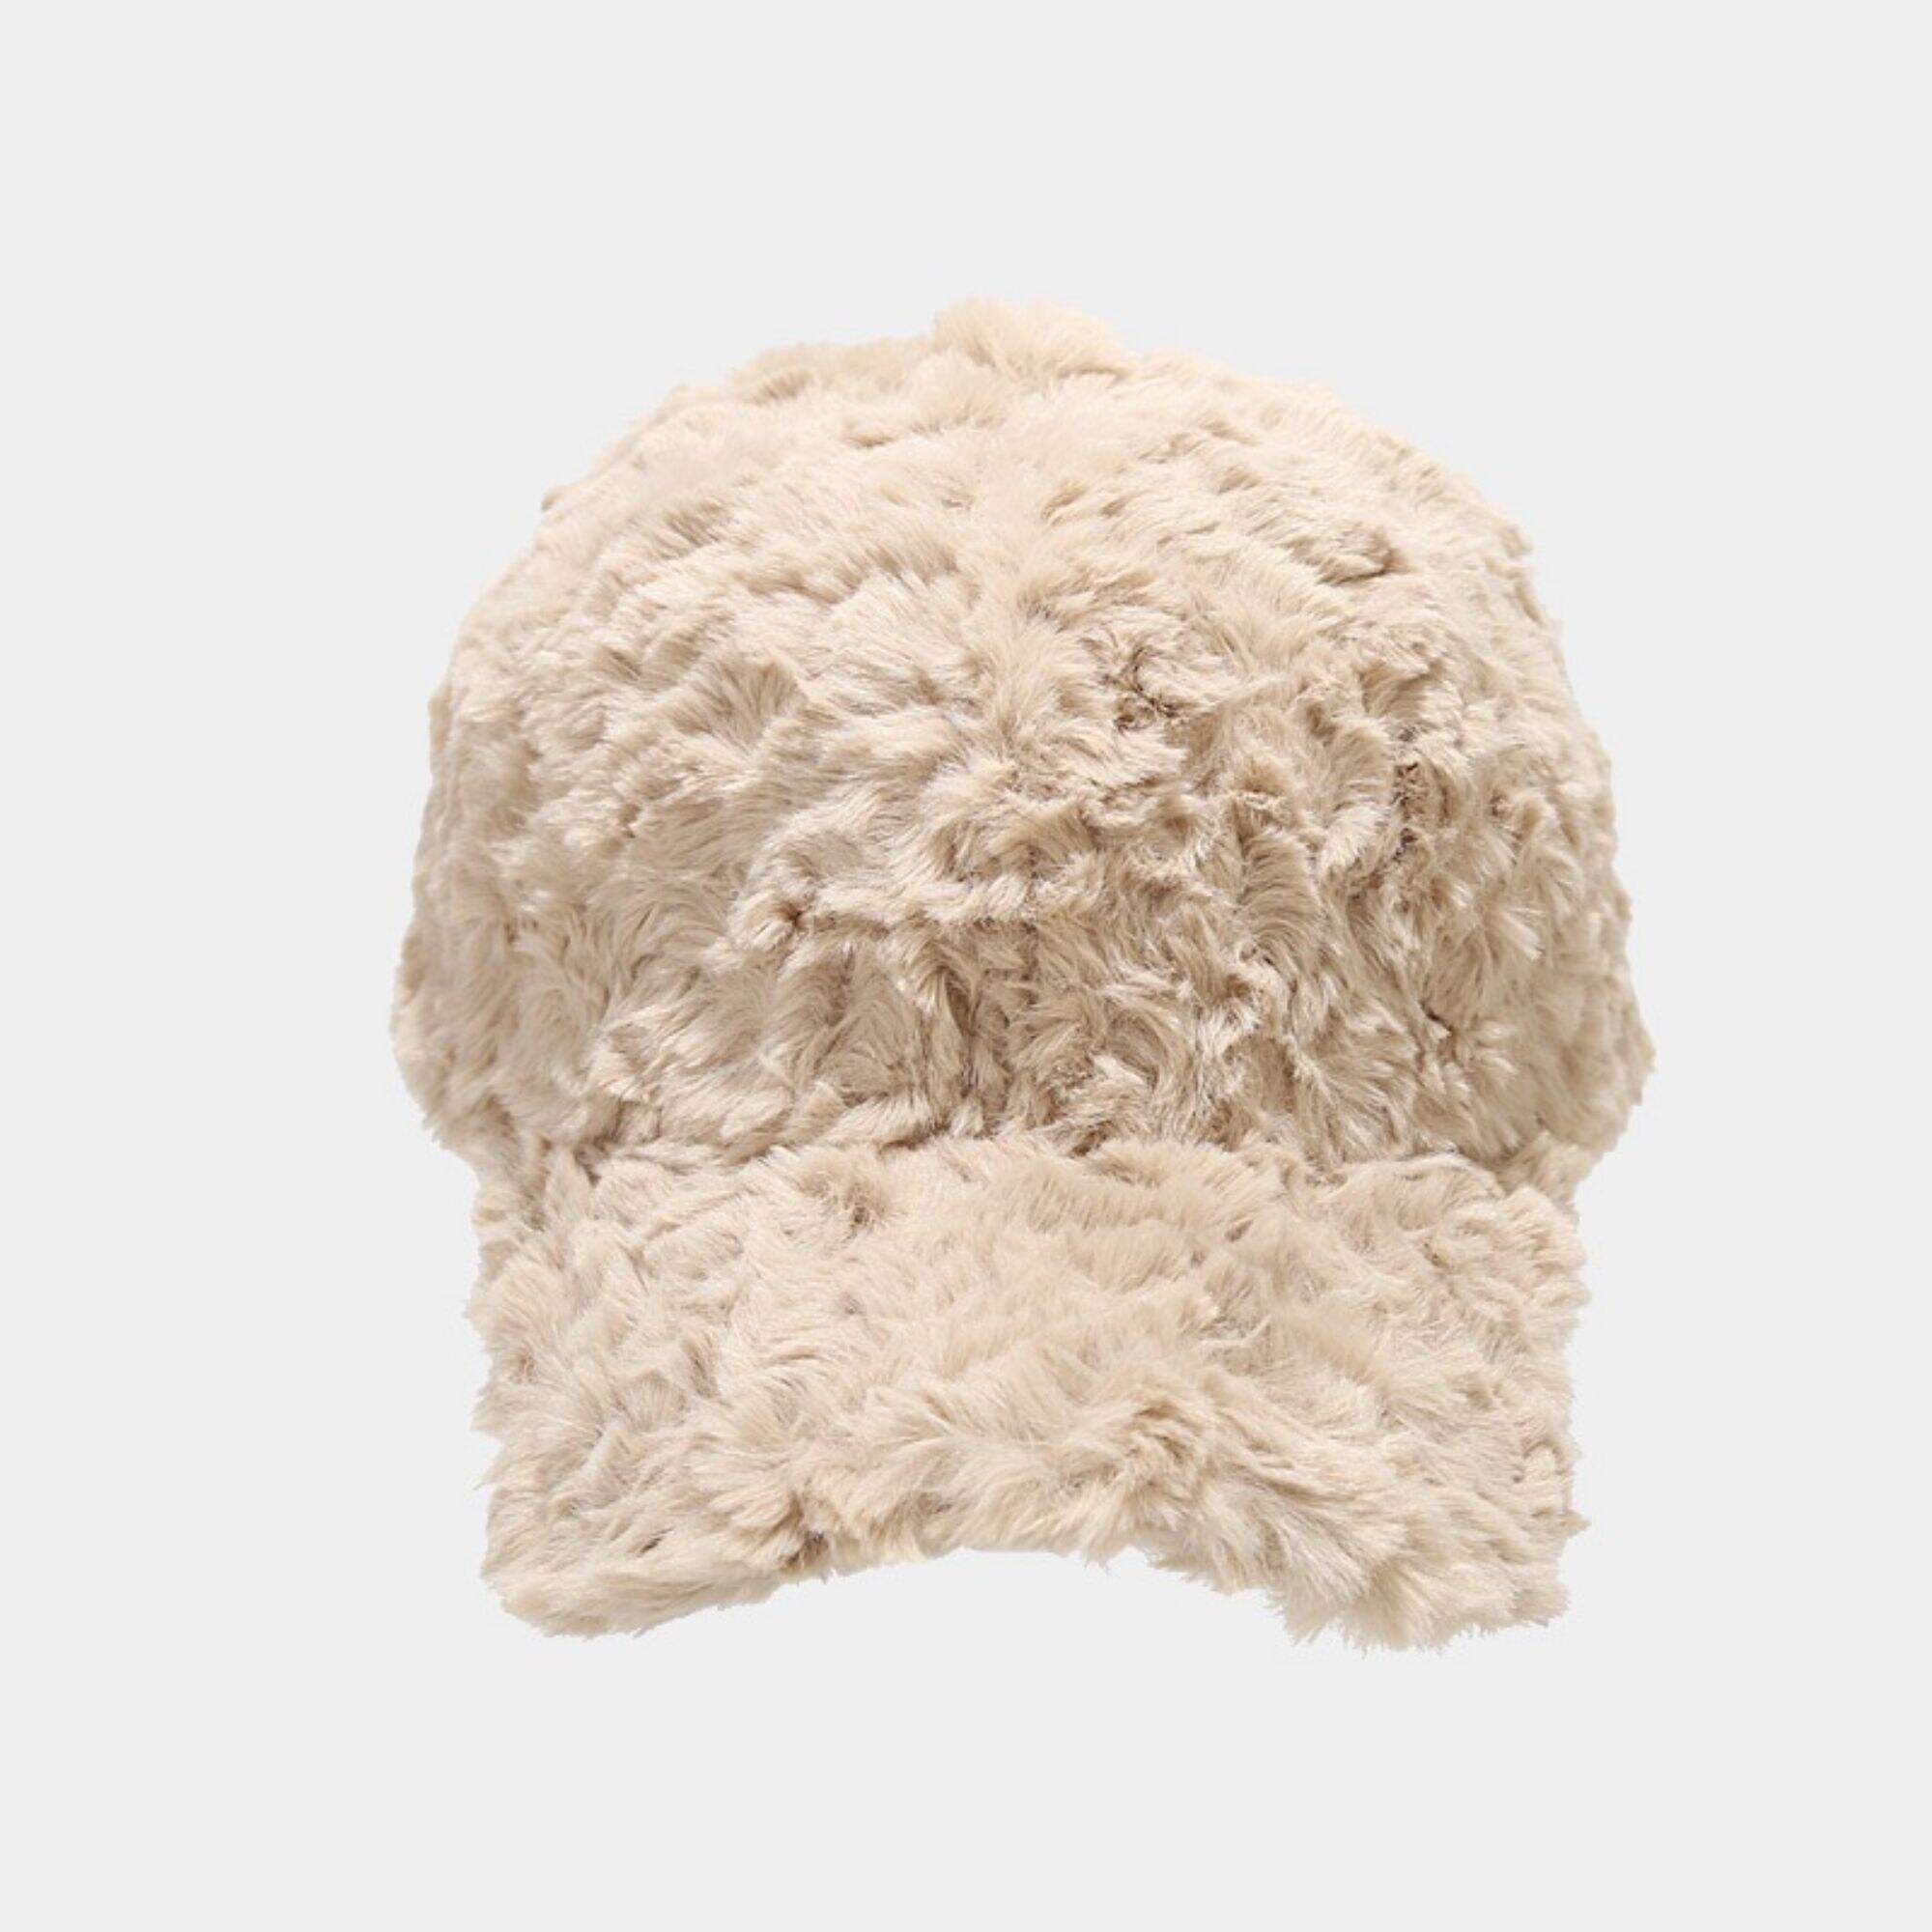 Custom plush baseball cap